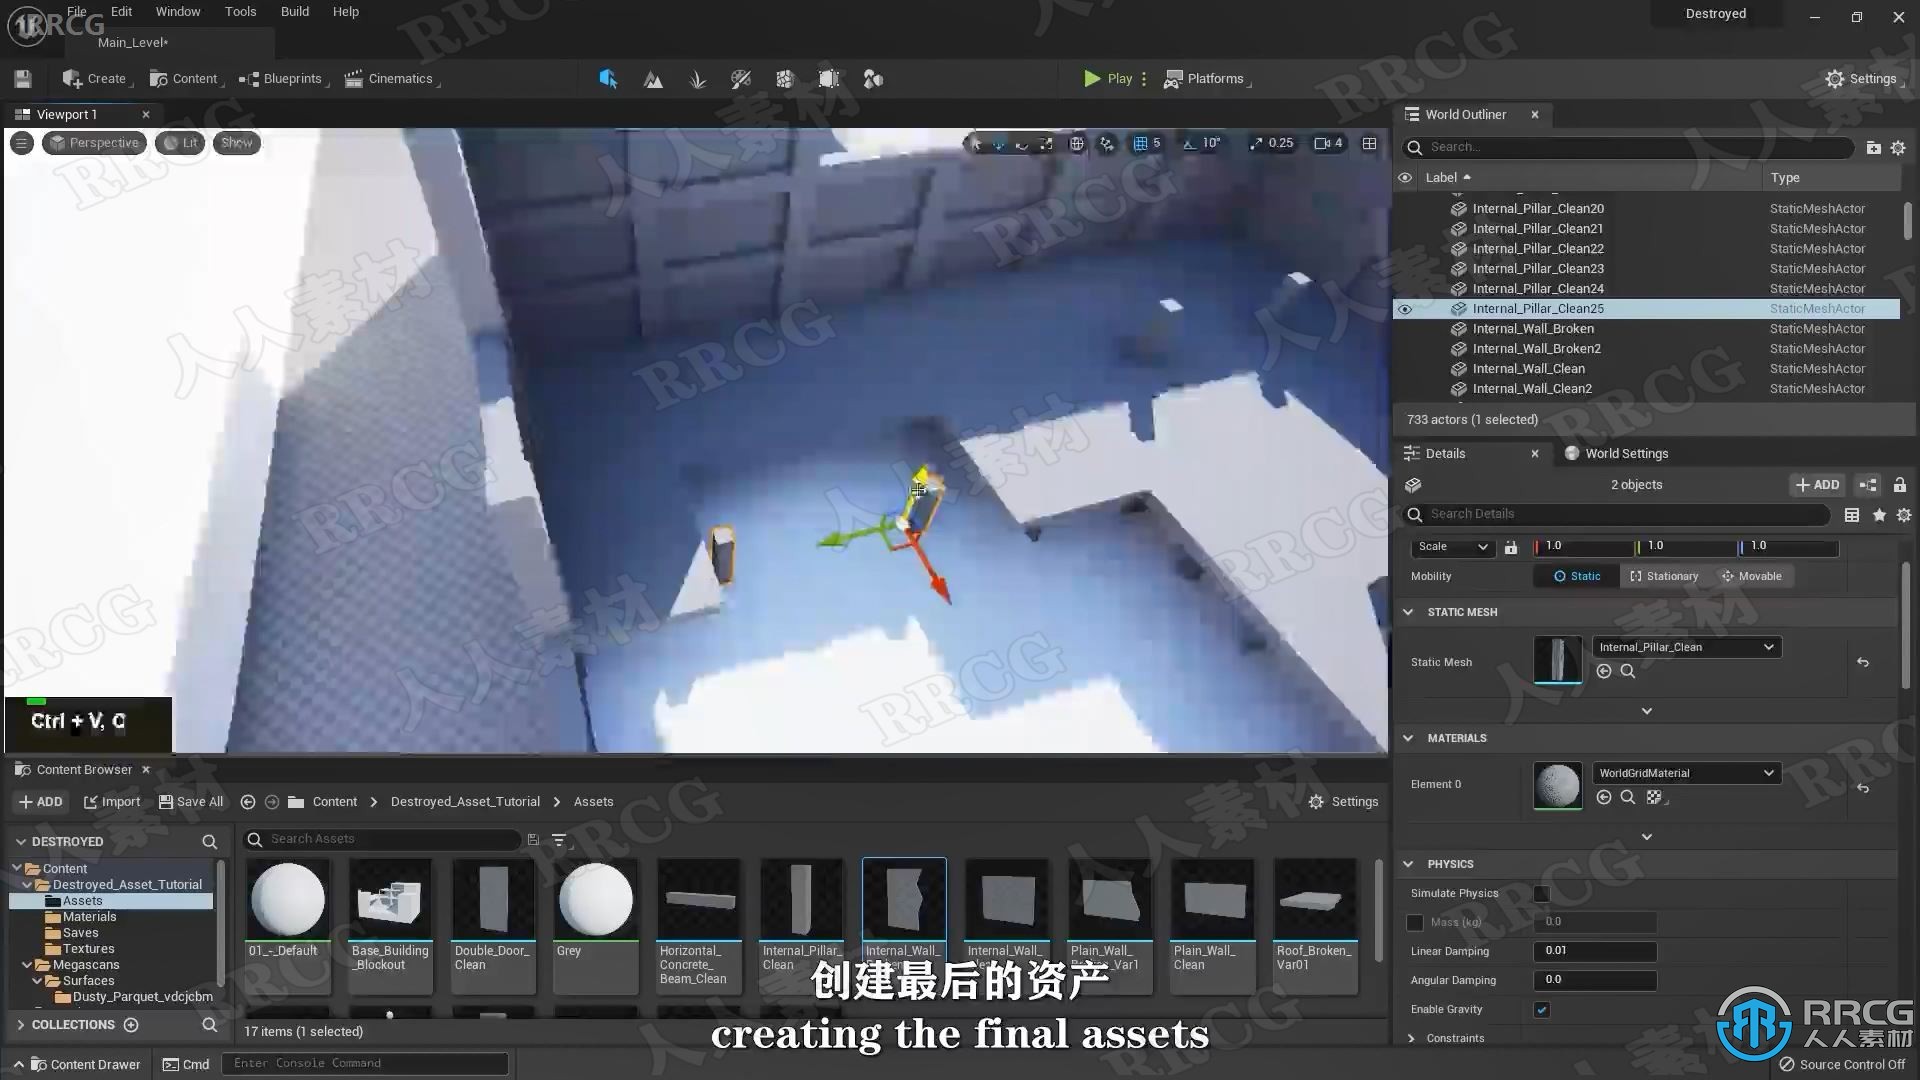 【中文字幕】3DsMax与UE5破损衰败城市游戏环境场景制作视频教程